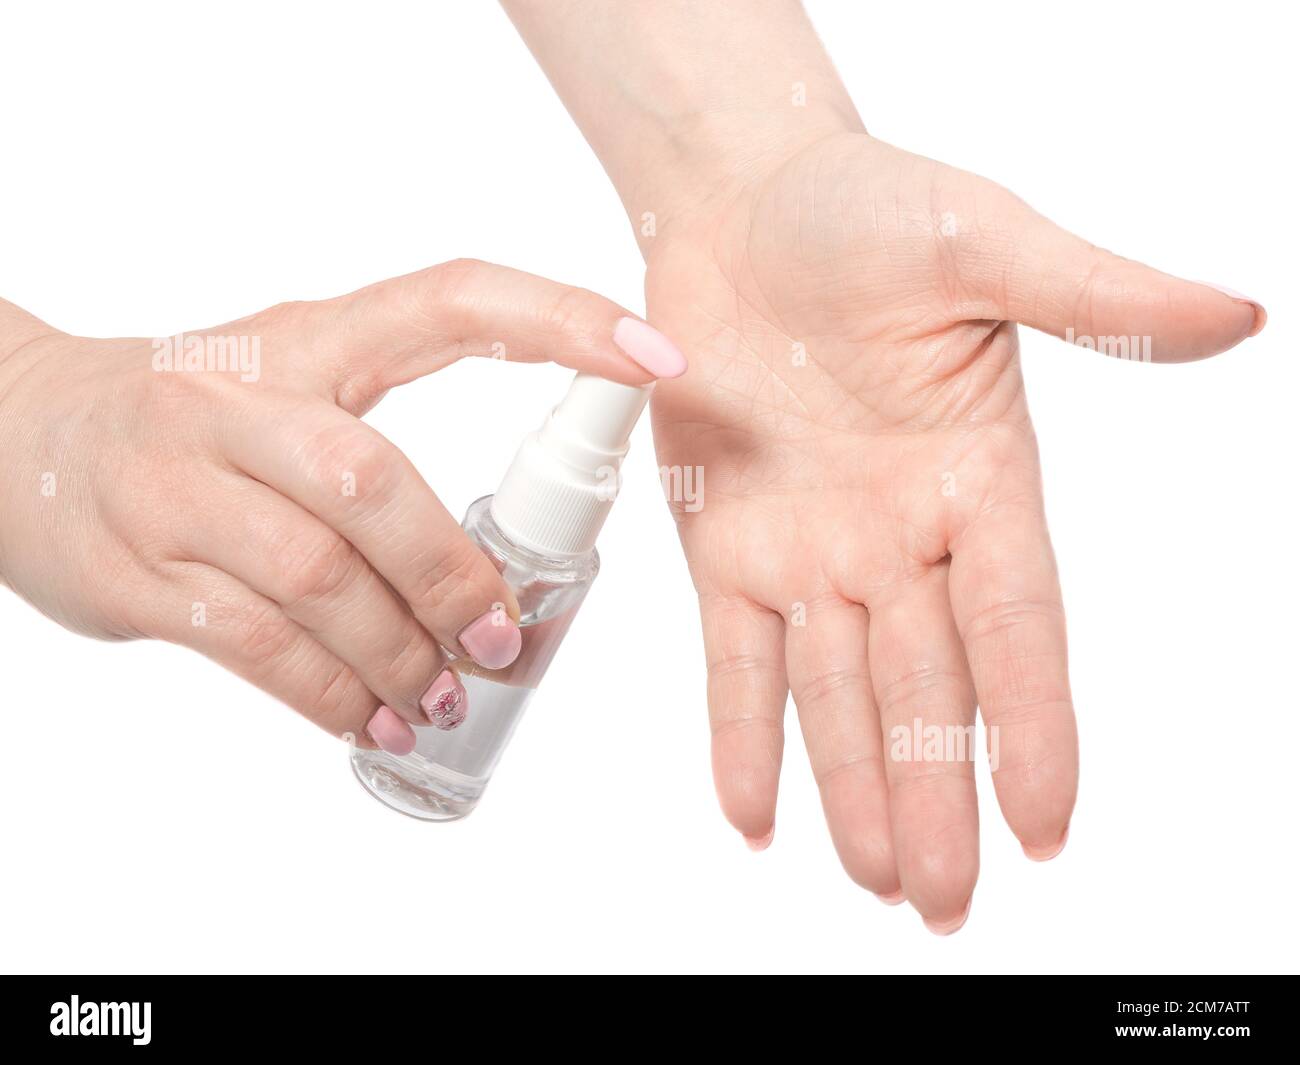 Femme appliquant un désinfectant pour les mains, se laver les mains avec du gel alcoolisé ou un désinfectant antibactérien après avoir utilisé une salle de bain publique.concept d'hygiène, bac blanc Banque D'Images